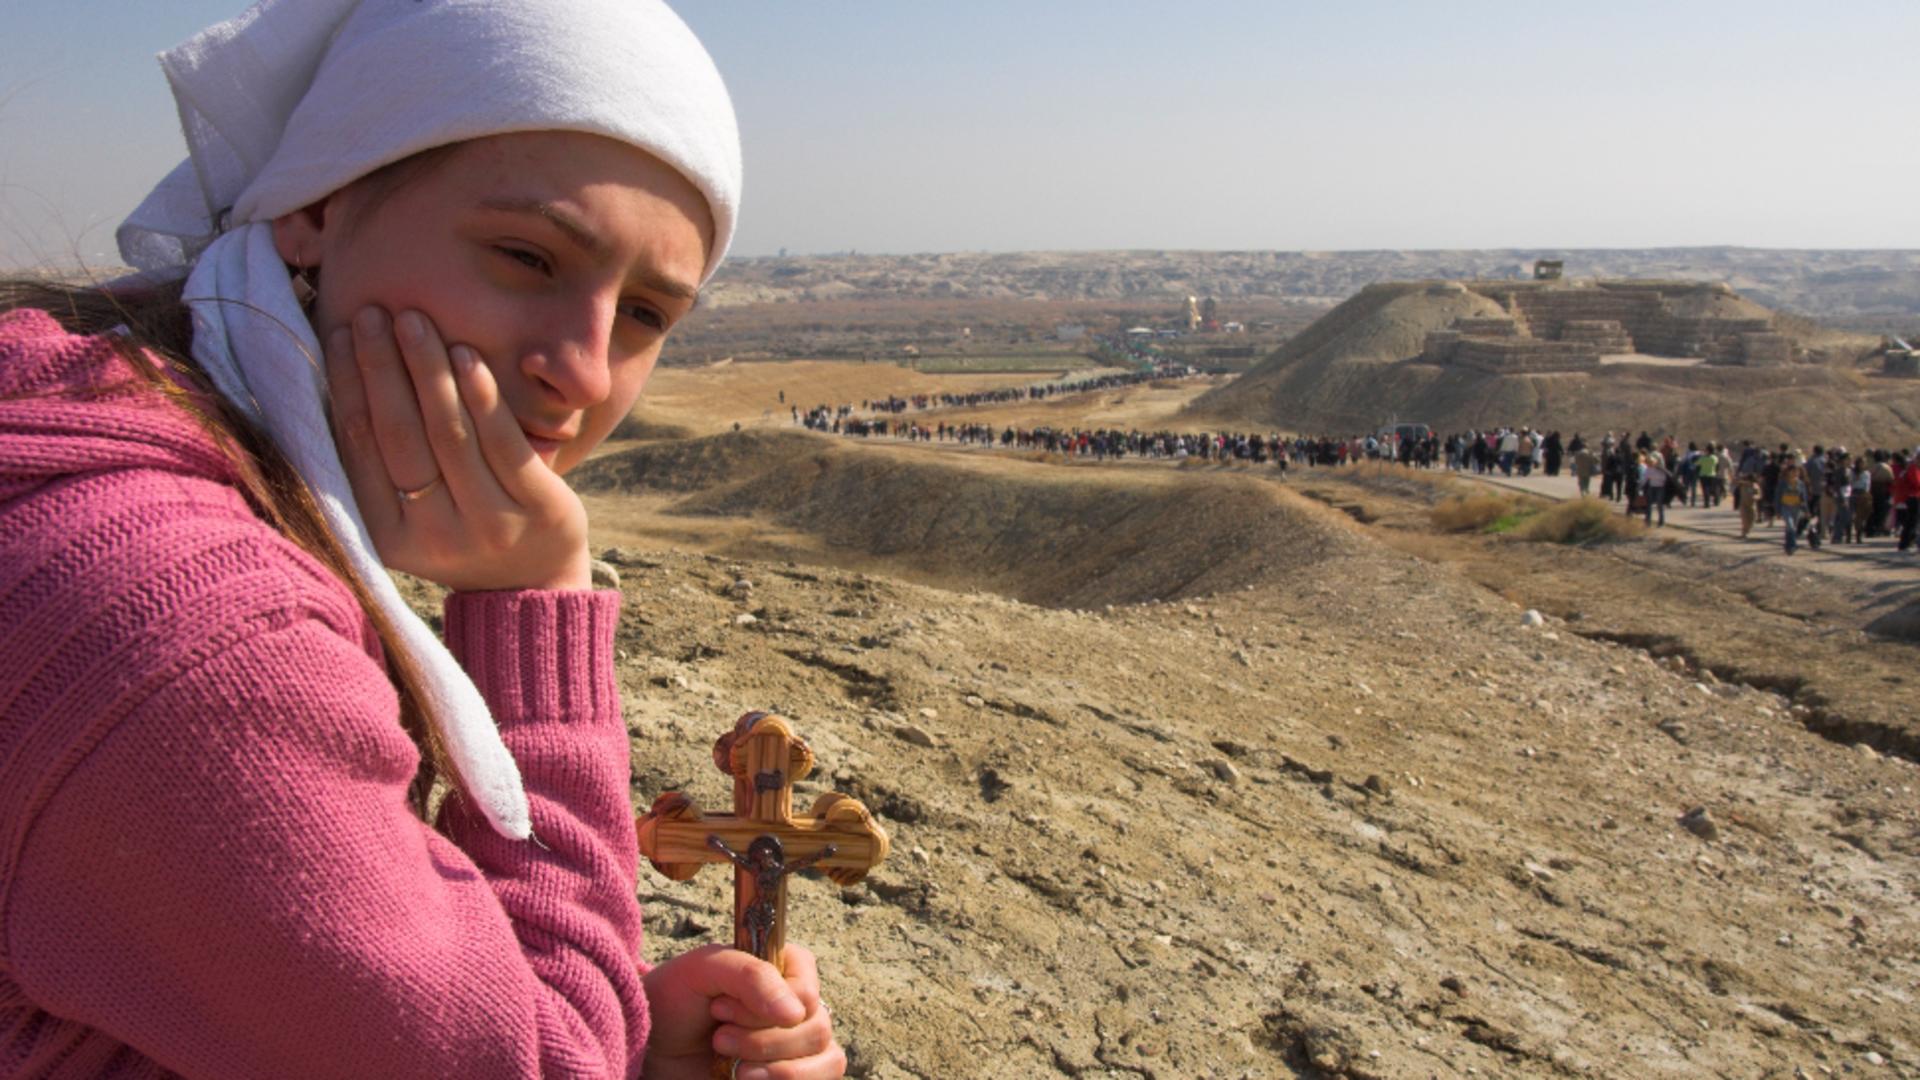 Pelerinajele în Israel, suspendate de Patriarhia Română / Foto: Profi Media